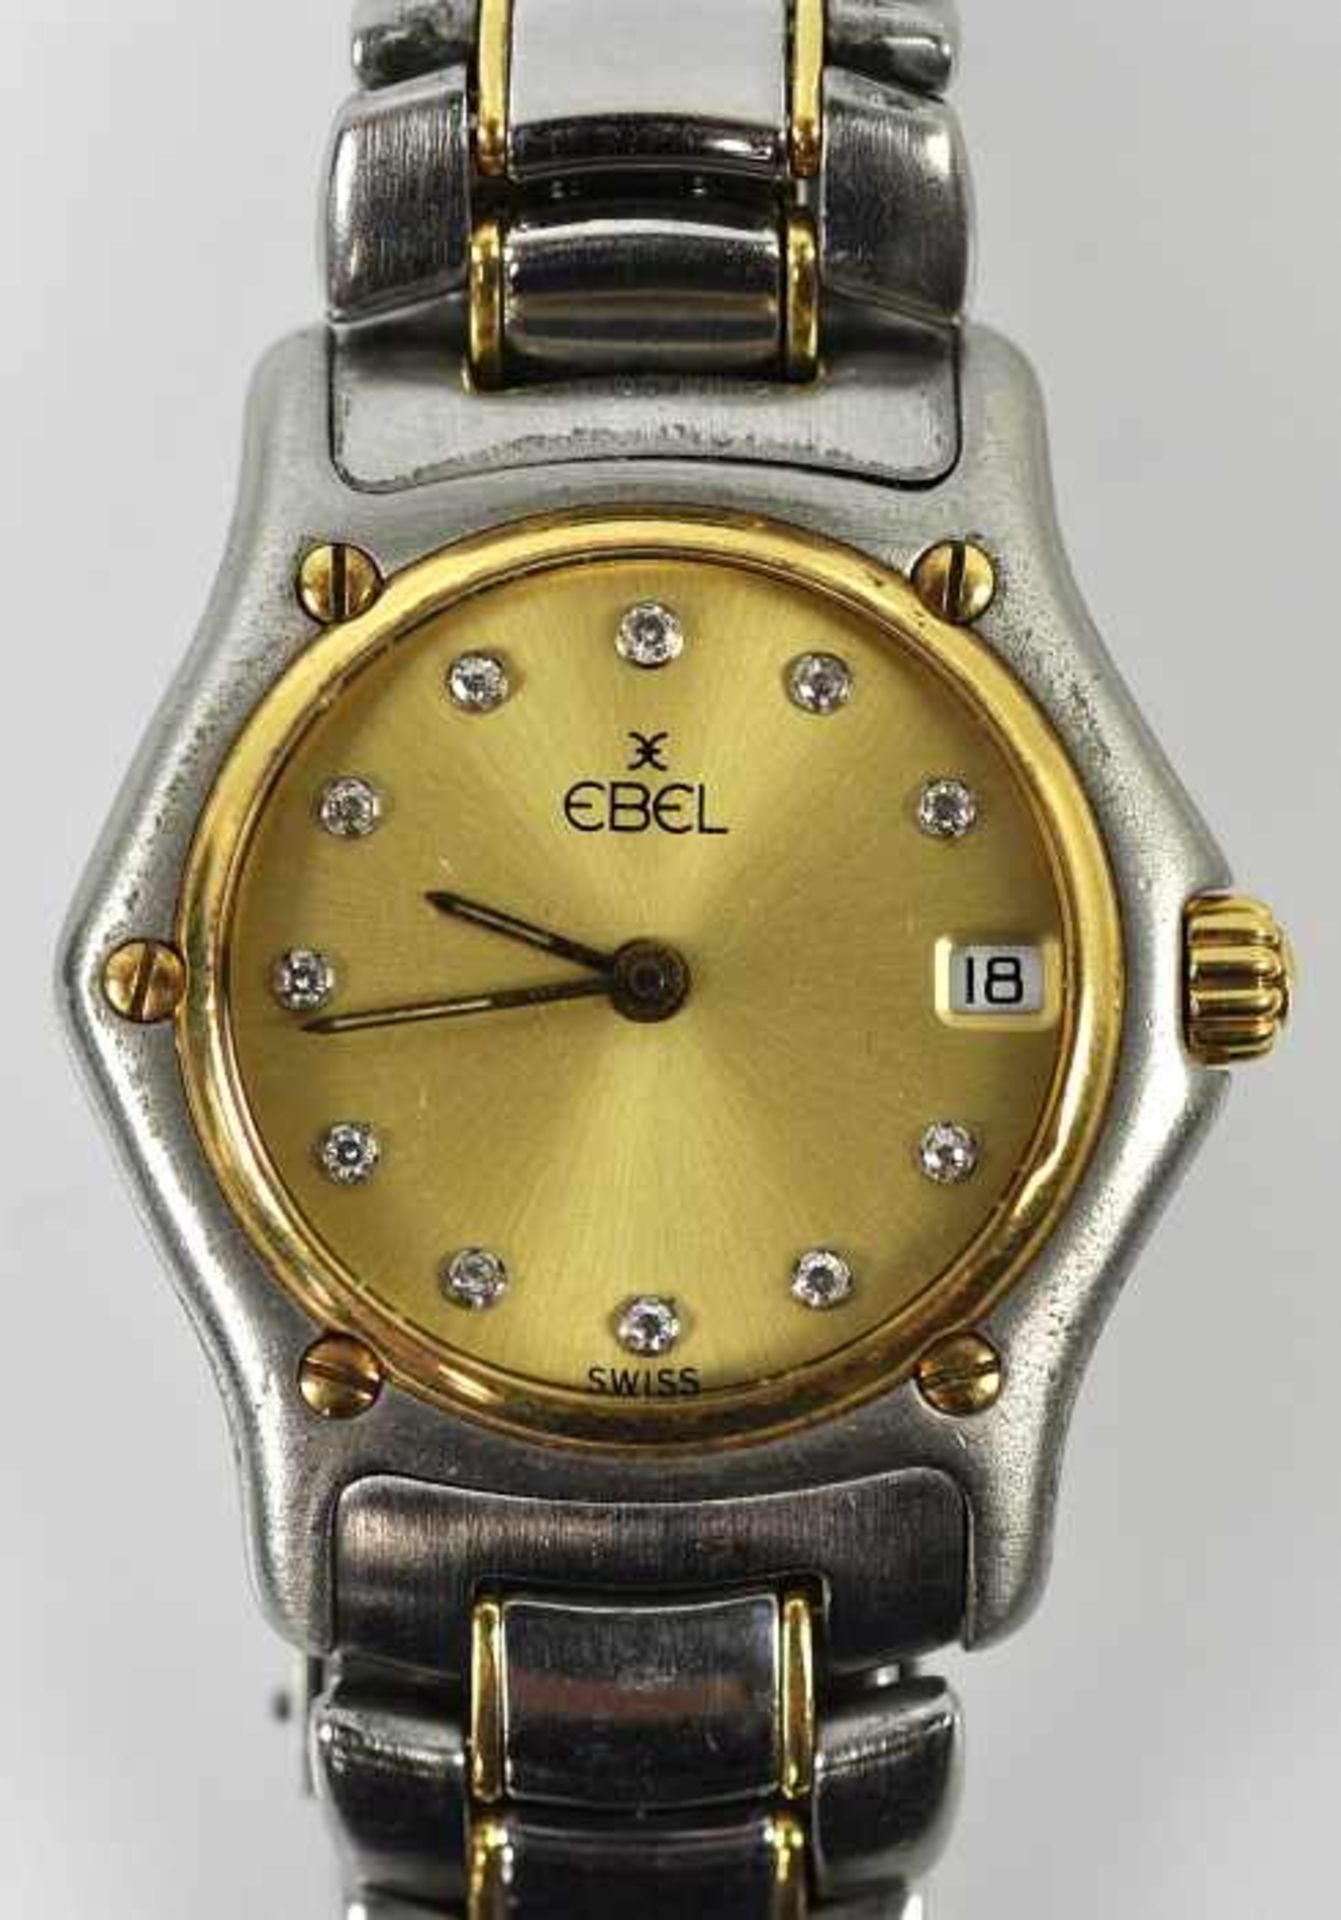 DAMENARMBANDUHR Ebel 1911, Quartz, Gehäuse und Armband Stahl mit Gold 18ct, goldfarbenes Zifferblatt